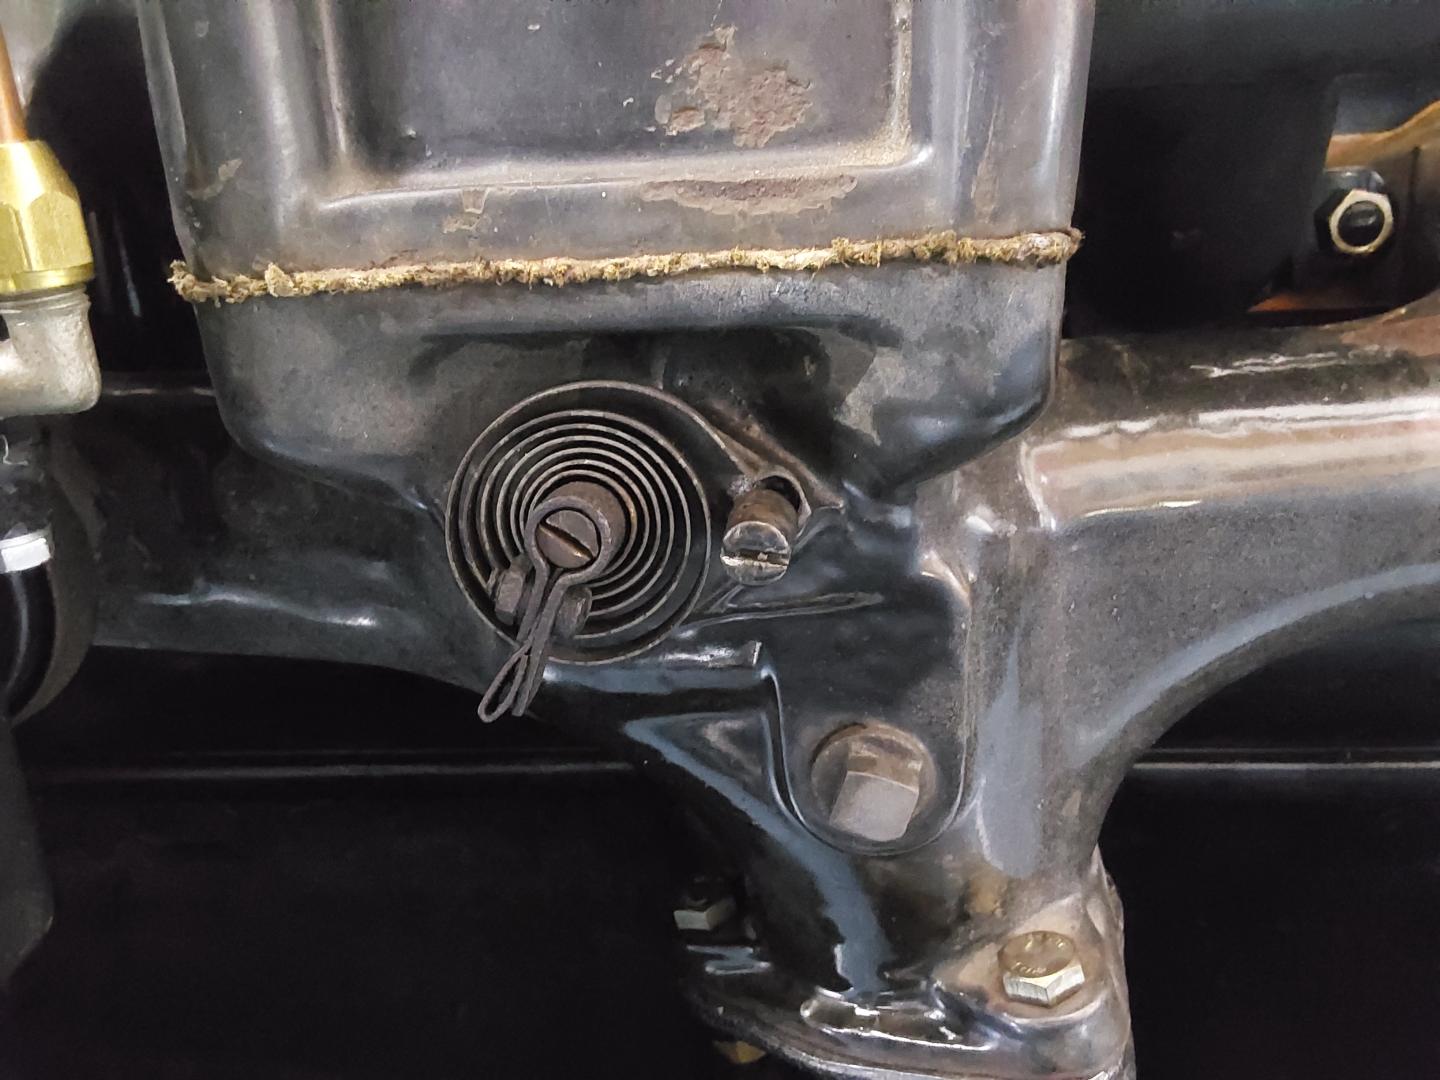 Heat valve spring